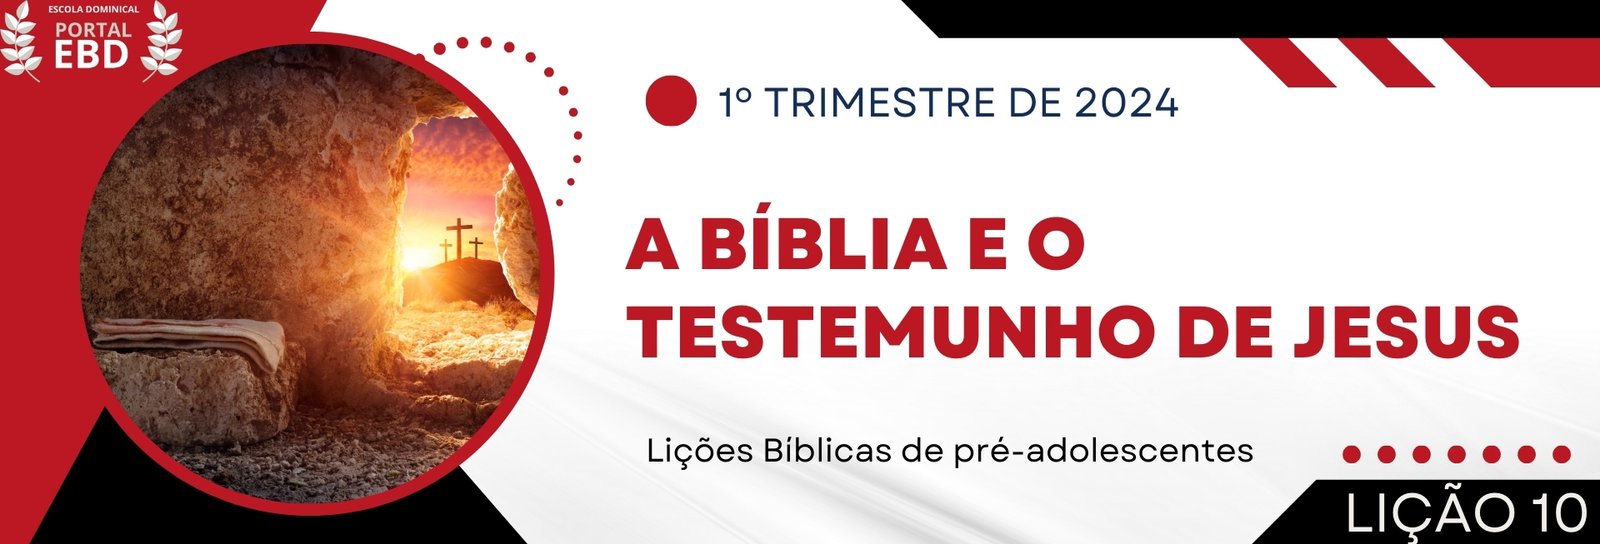 Lição 10 - A Bíblia e o testemunho de Jesus I